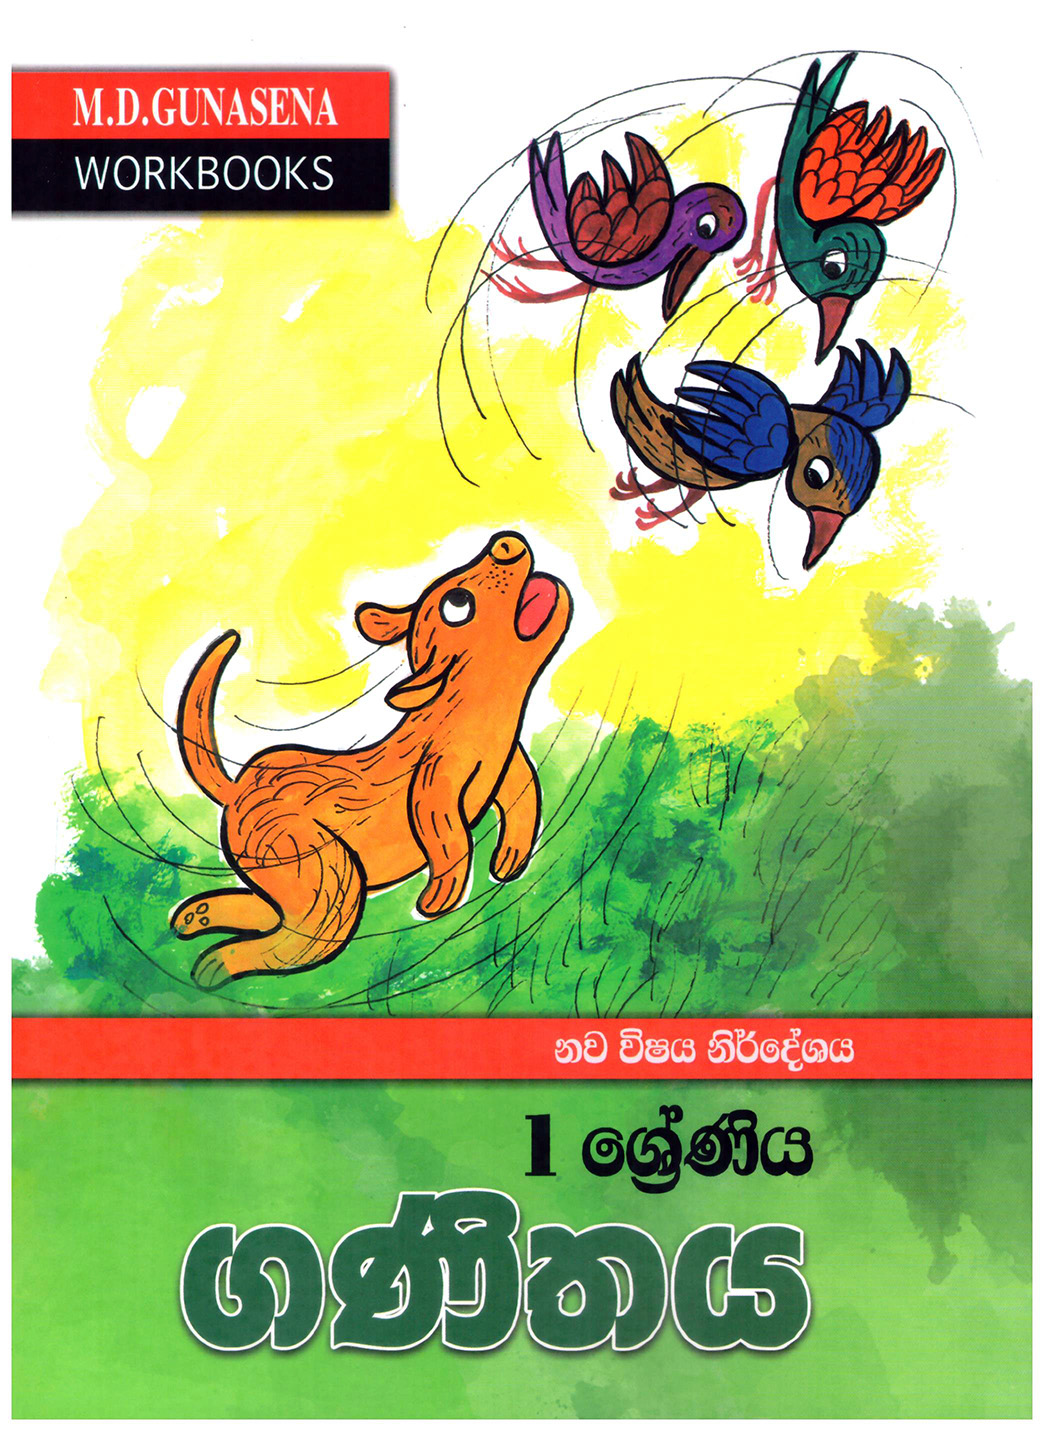 M.D. Gunasena Workbooks : Ganithaya 01 Shreniya